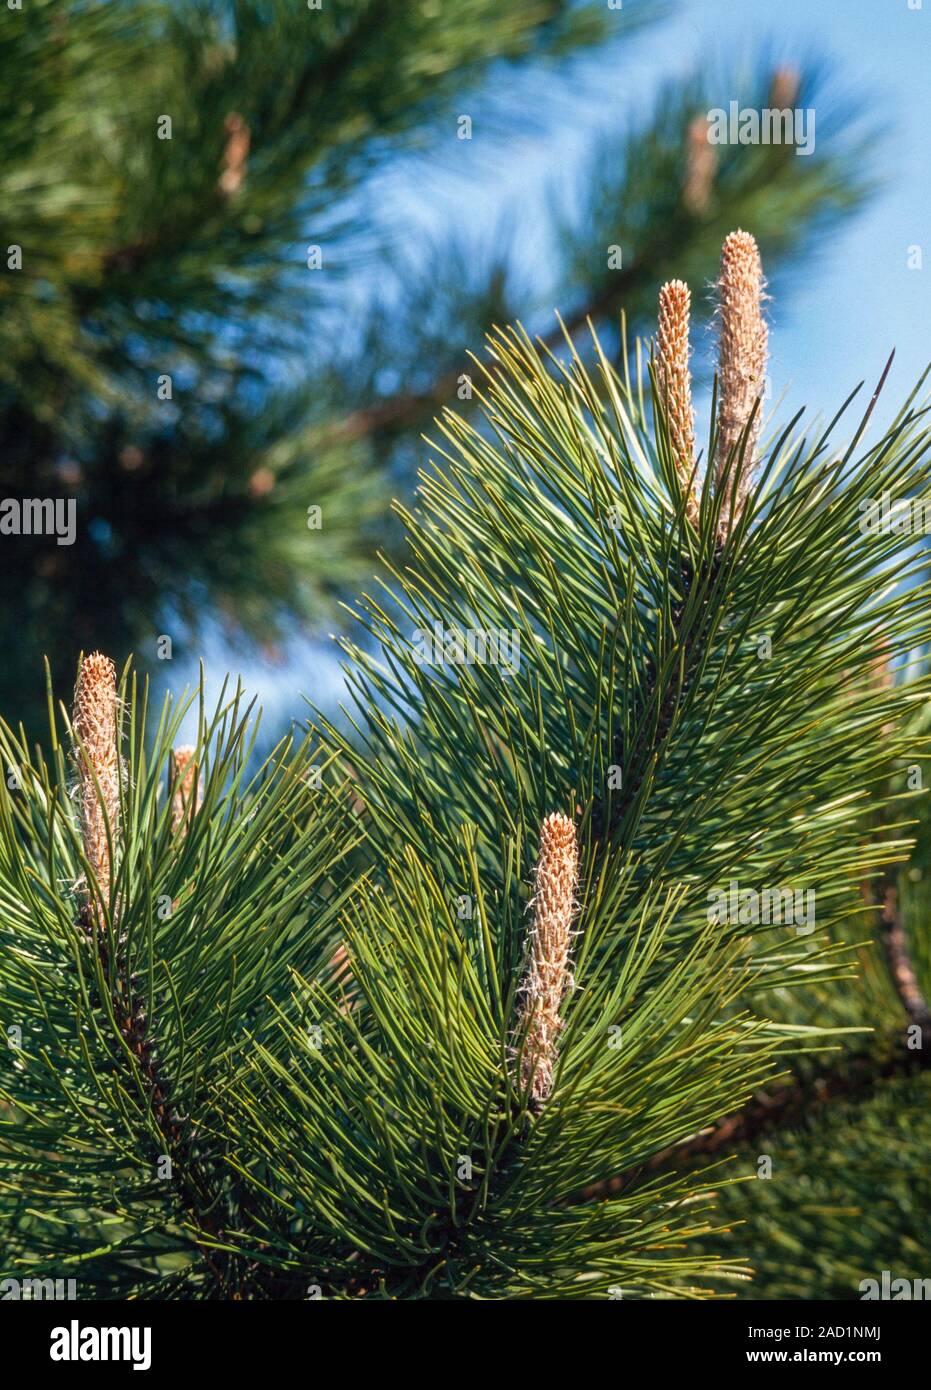 Pine tree growing tips, Pinus sp. Stock Photo